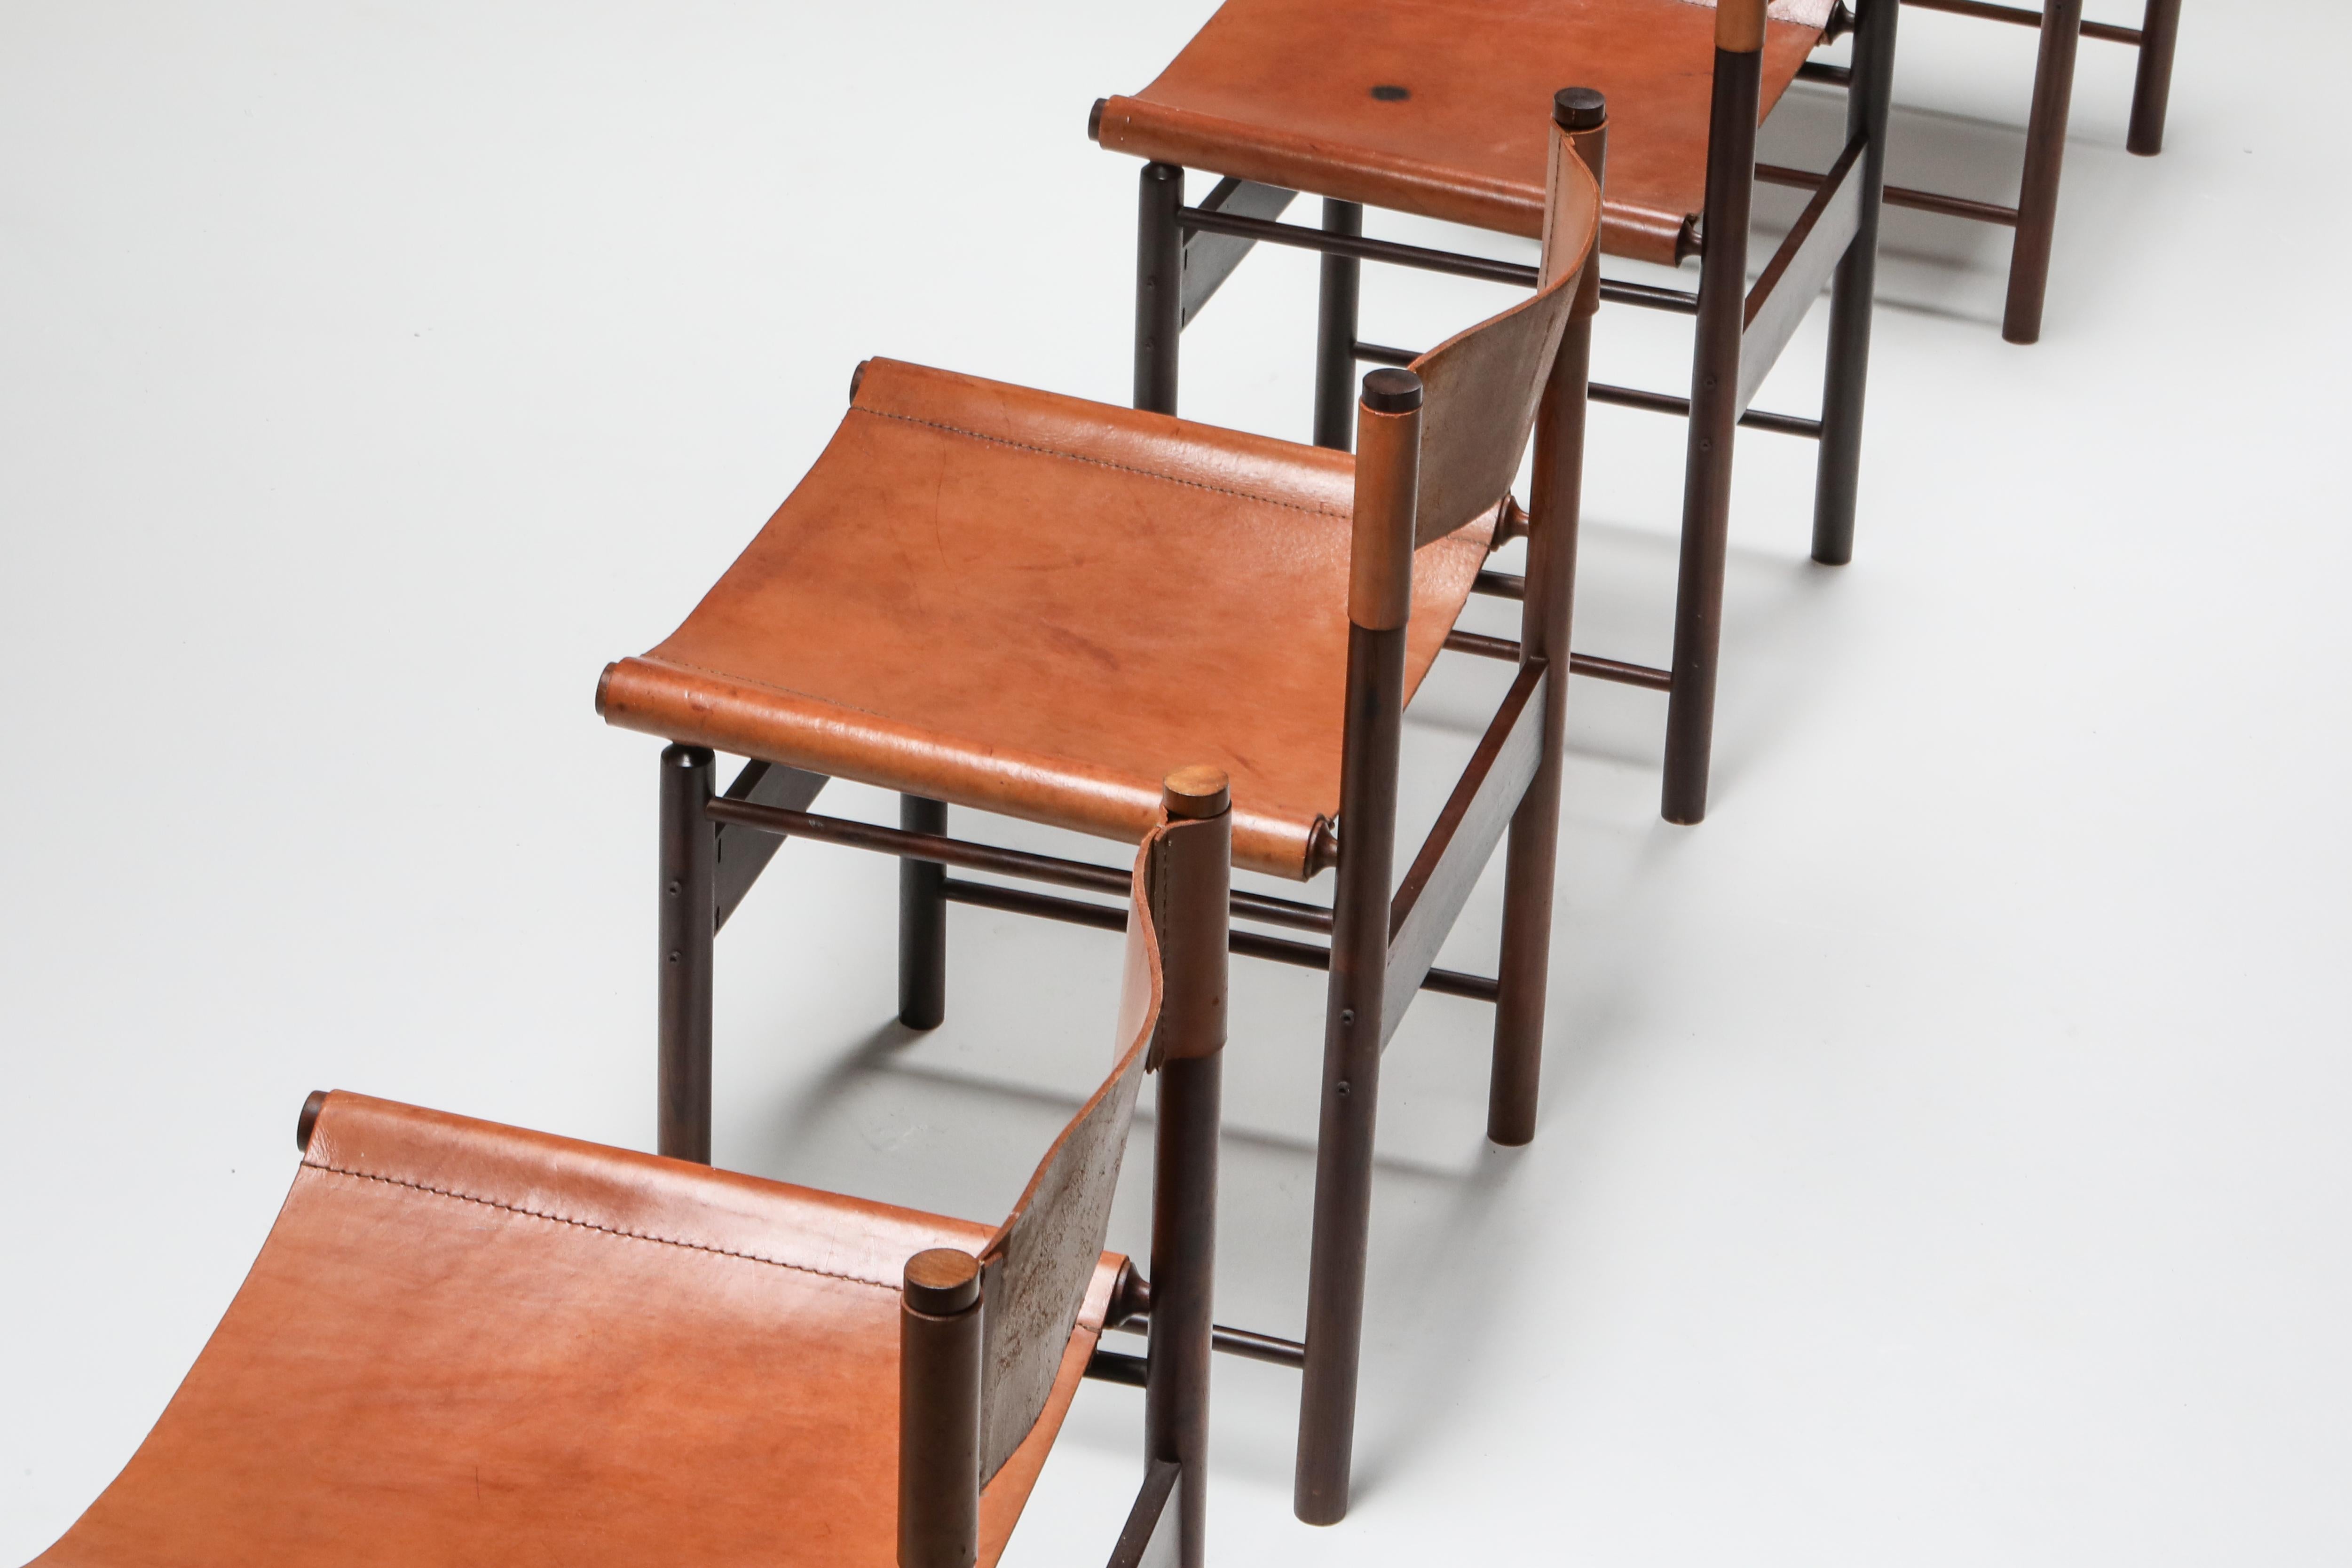 Brazilian Modern Chairs by Jorge Zalszupin 1